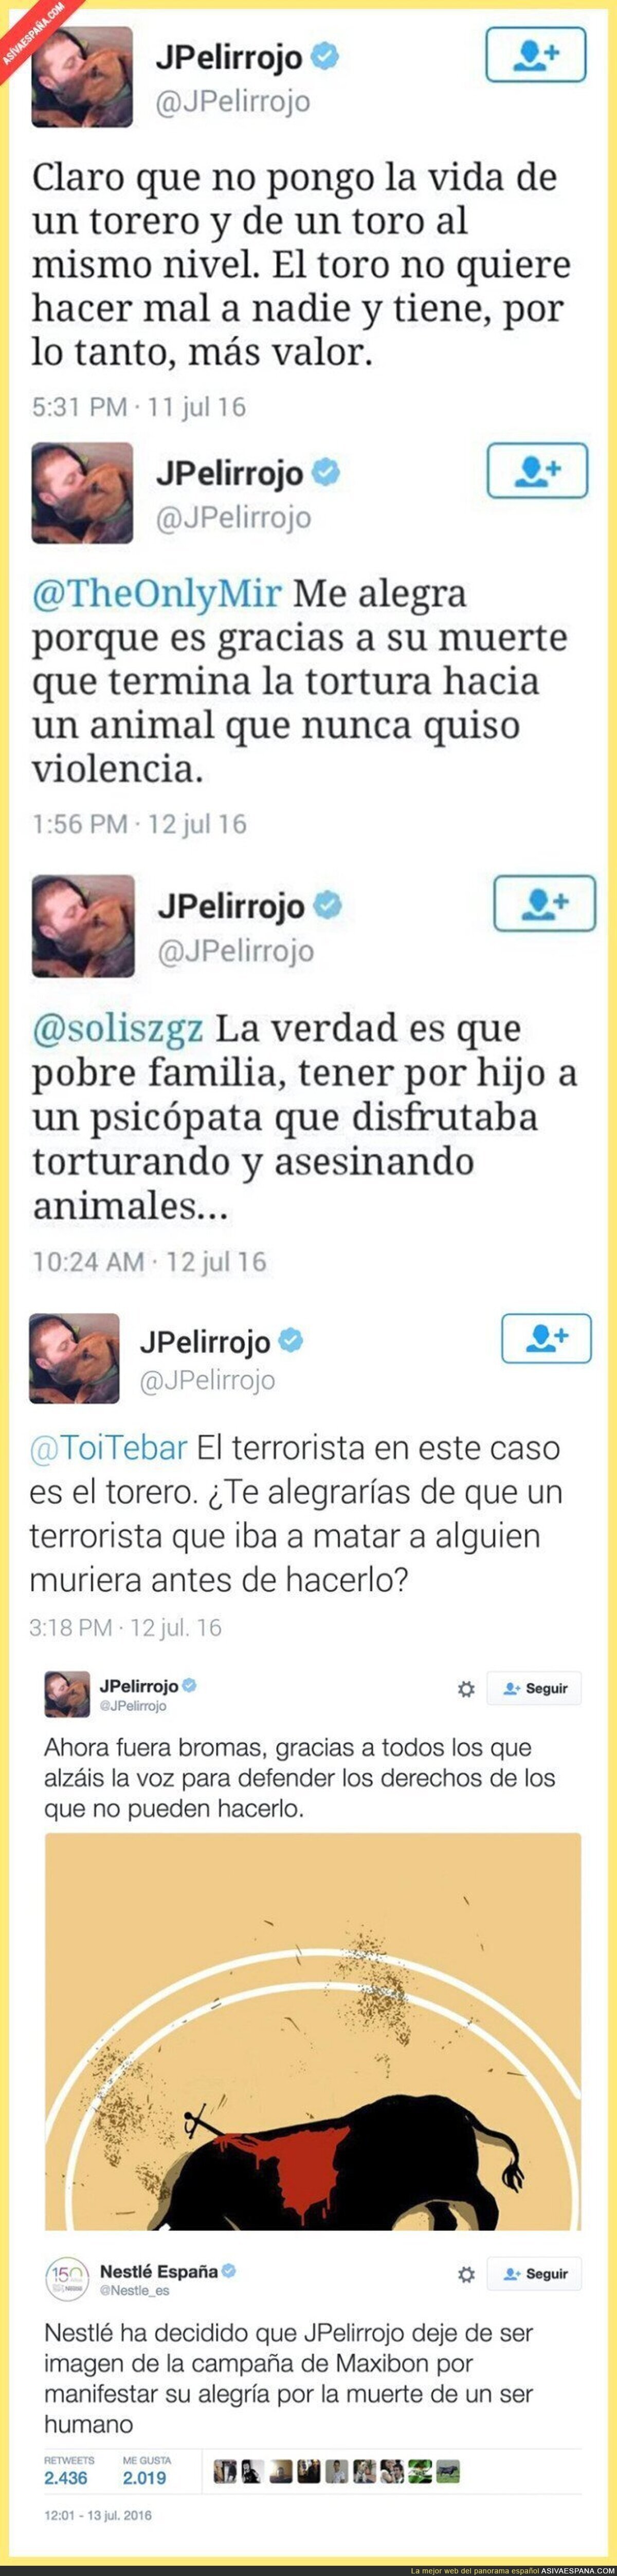 Nestlé y Maxibon despiden al youtuber JPelirrojo tras estos tuits sobre la muerte de un torero